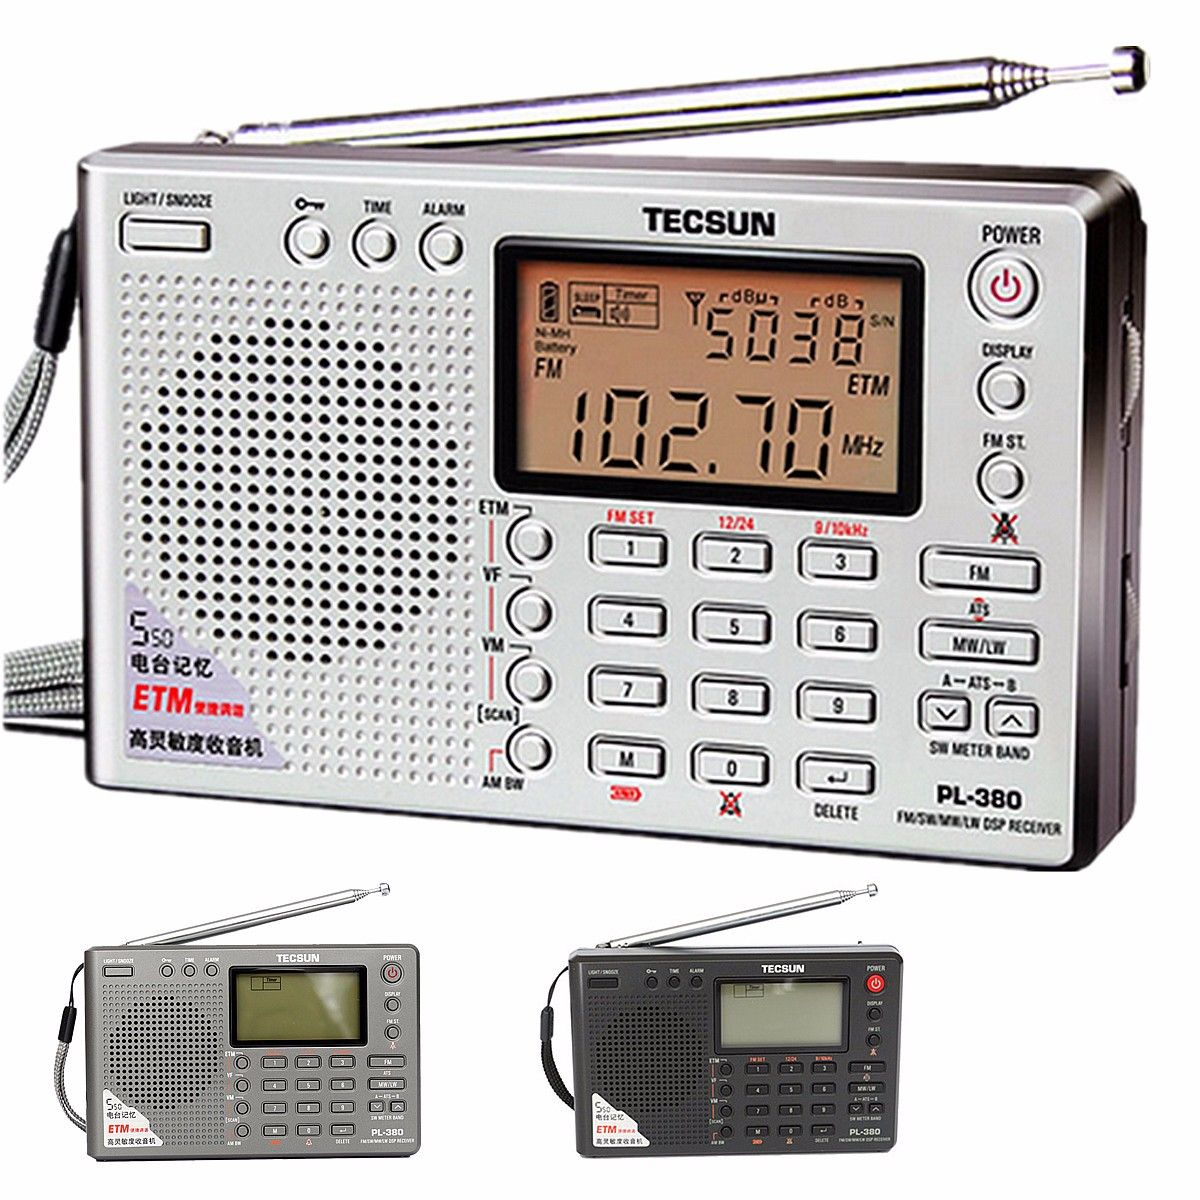 TECSUN-PL-380-DSP-PLL-FM-MW-SW-LW-Digital-Stereo-Radio-World-Band-Receiver-1094111